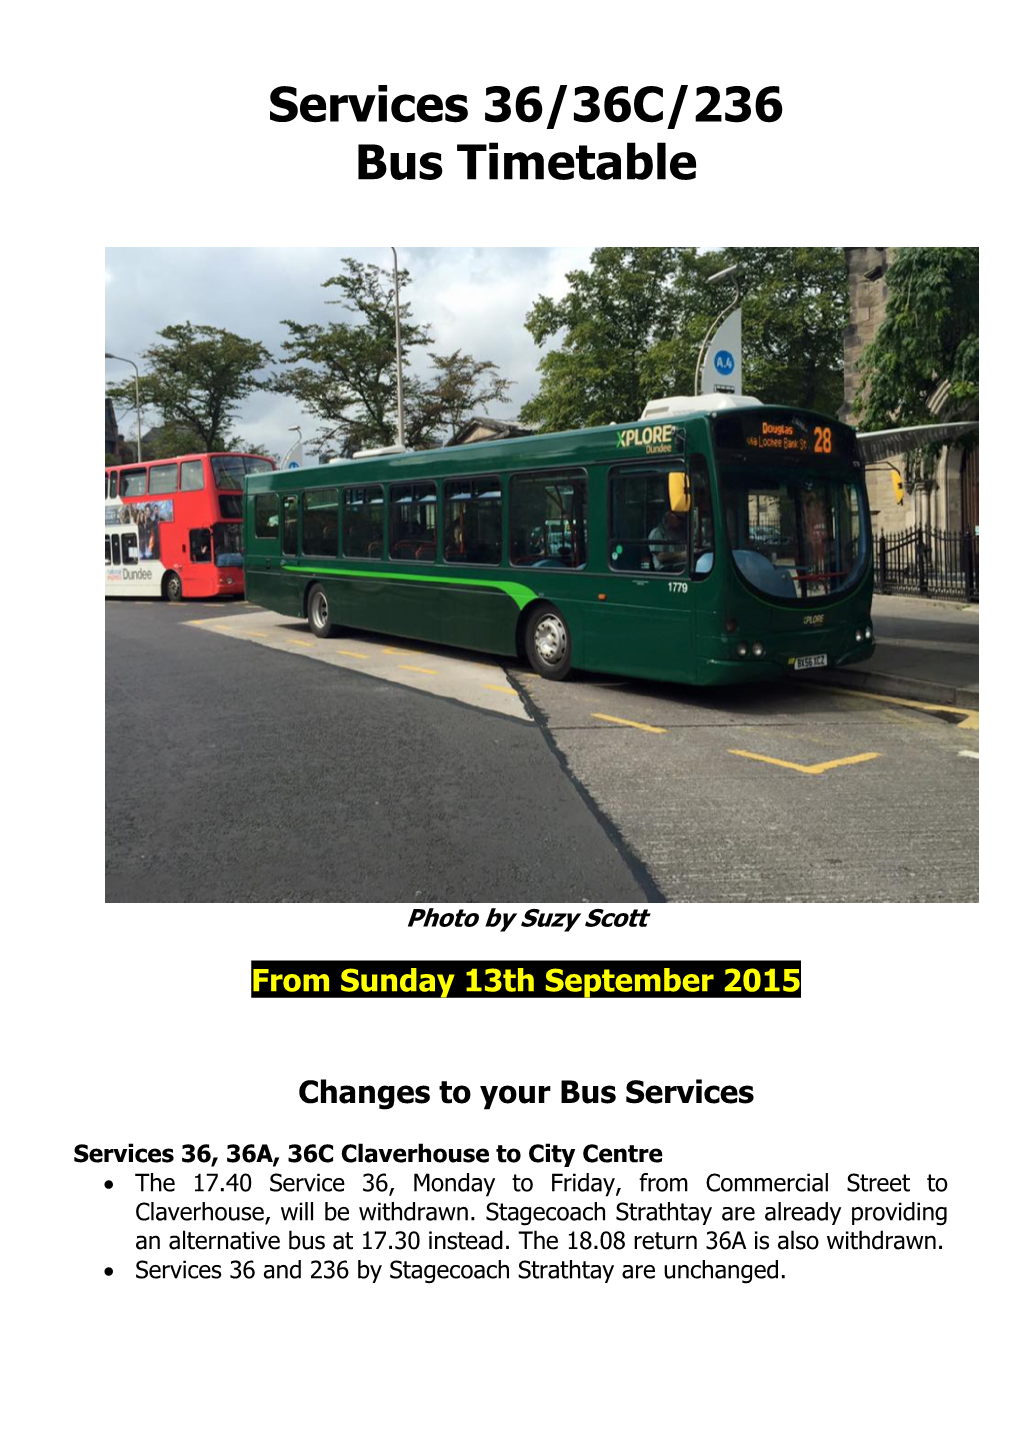 Services 36/36C/236 Bus Timetable